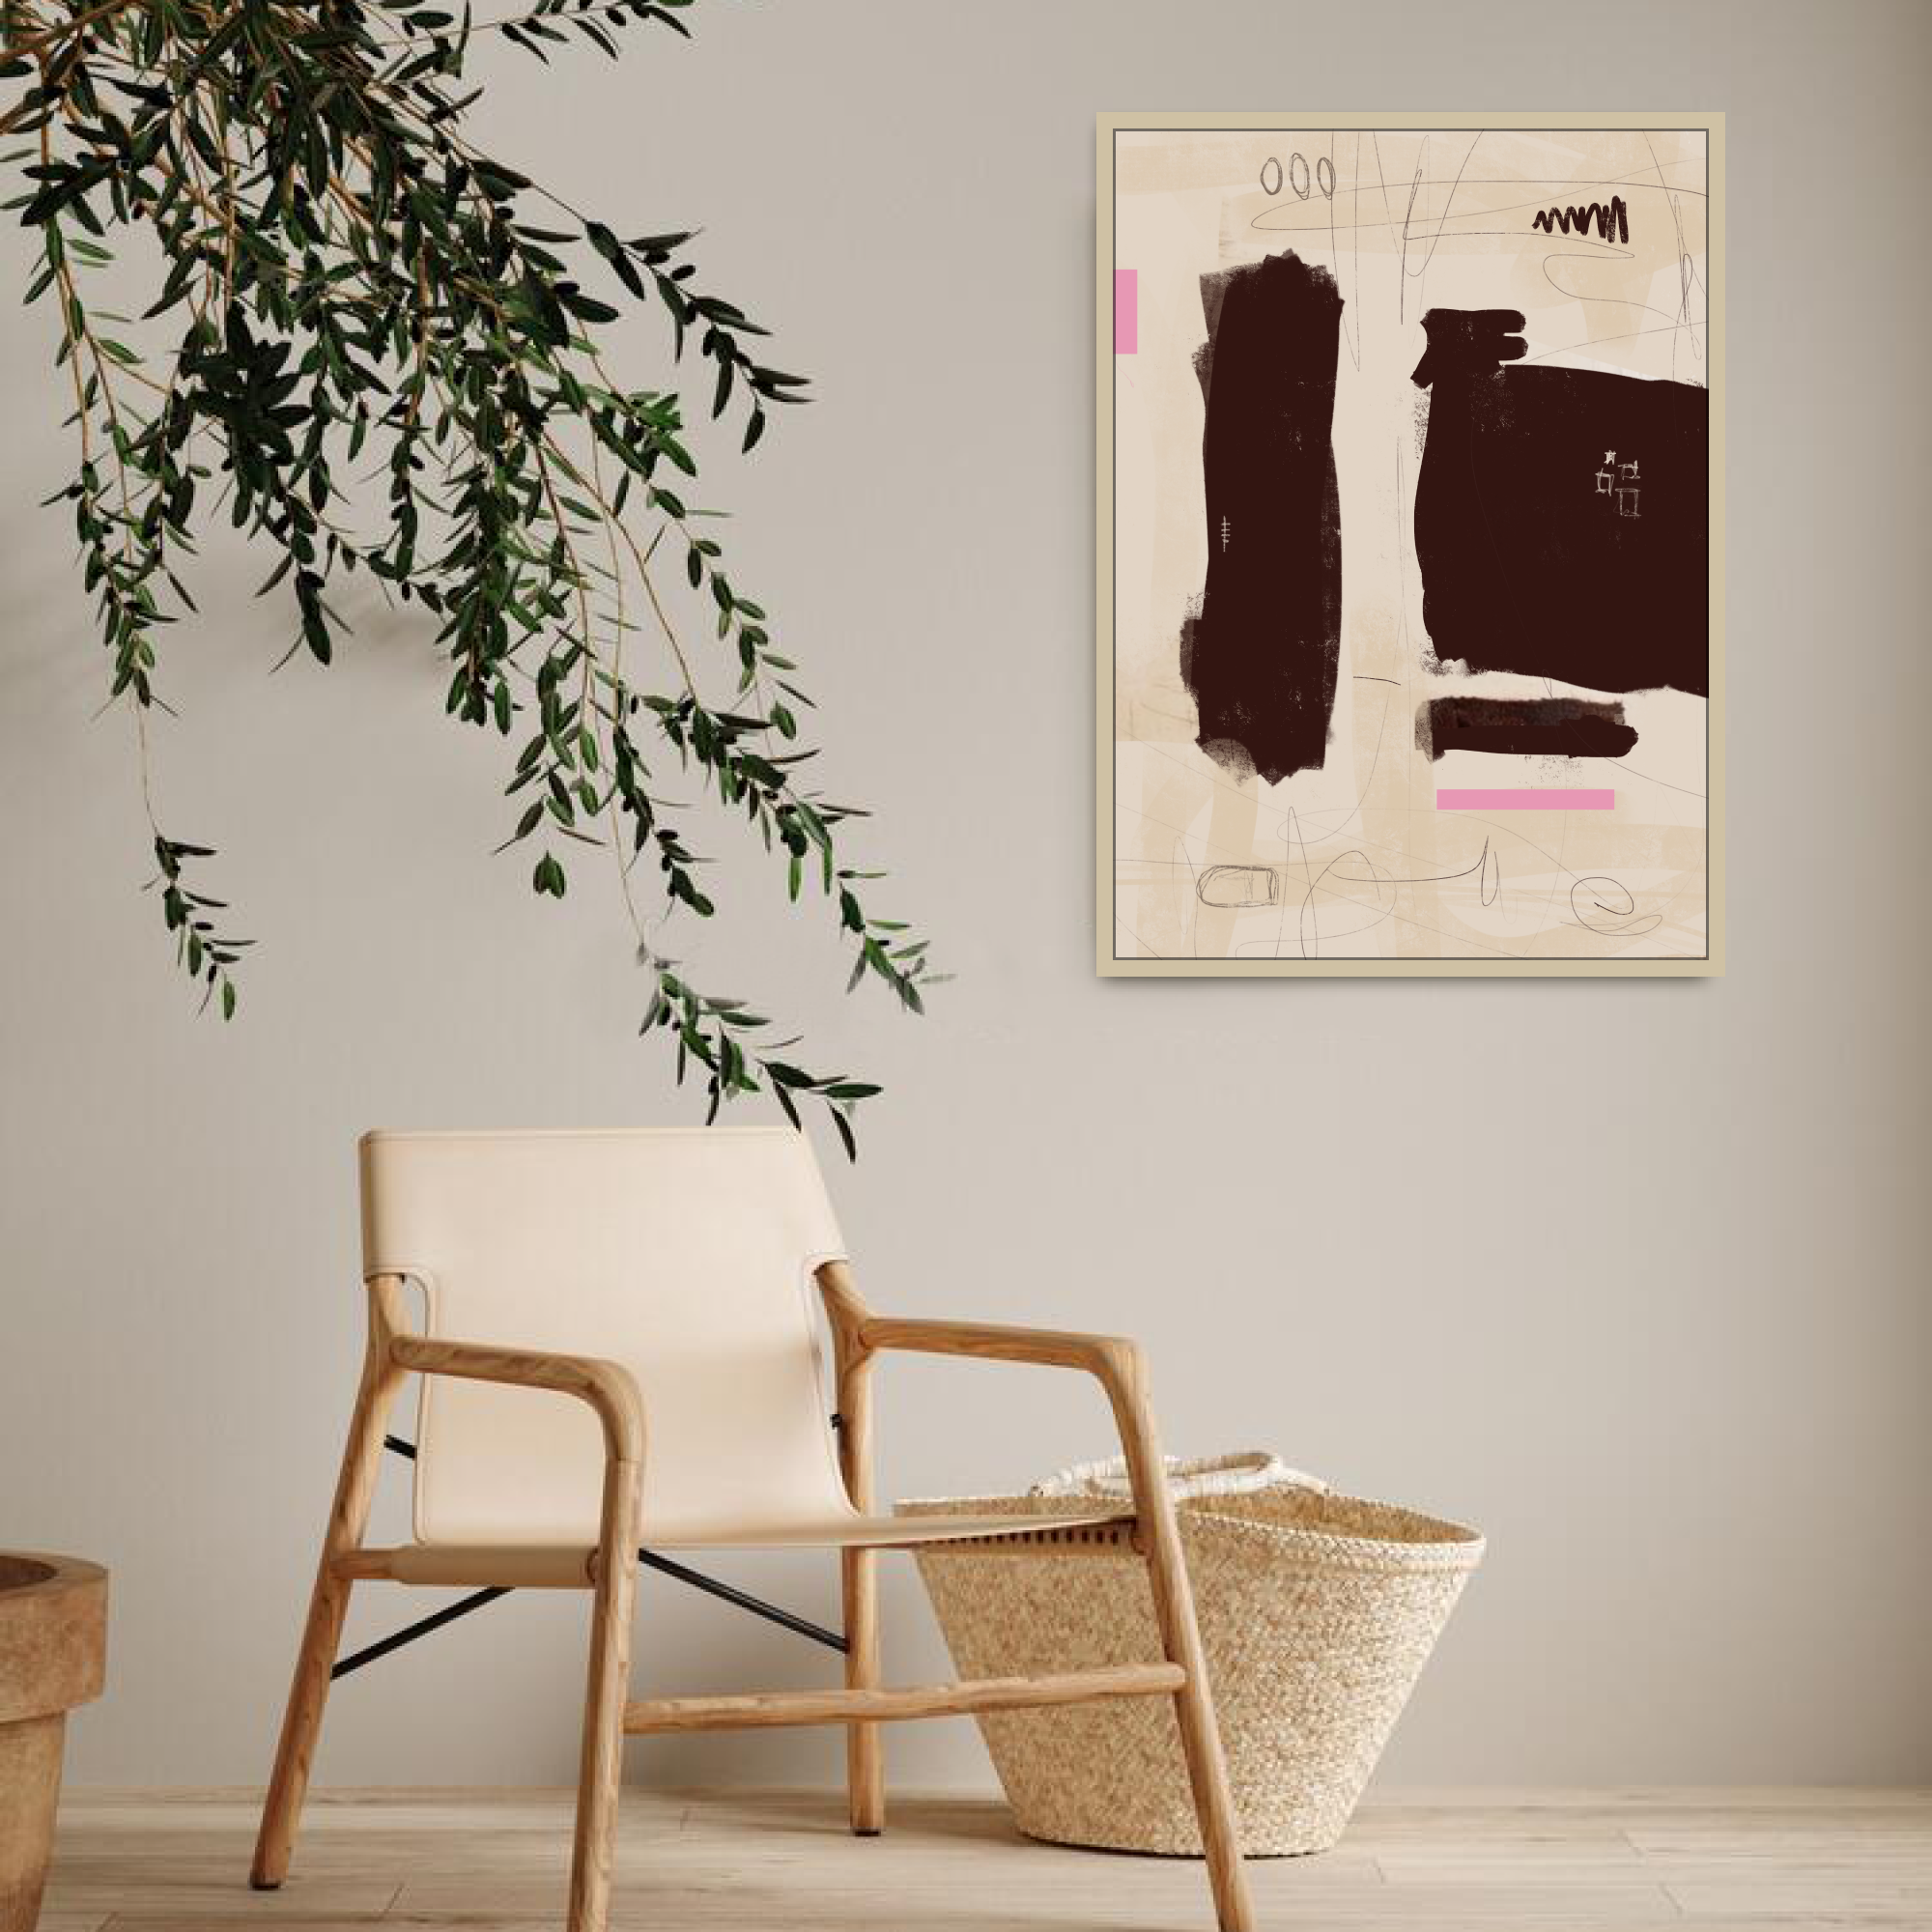 Canvas Print: "Simple Room #1"